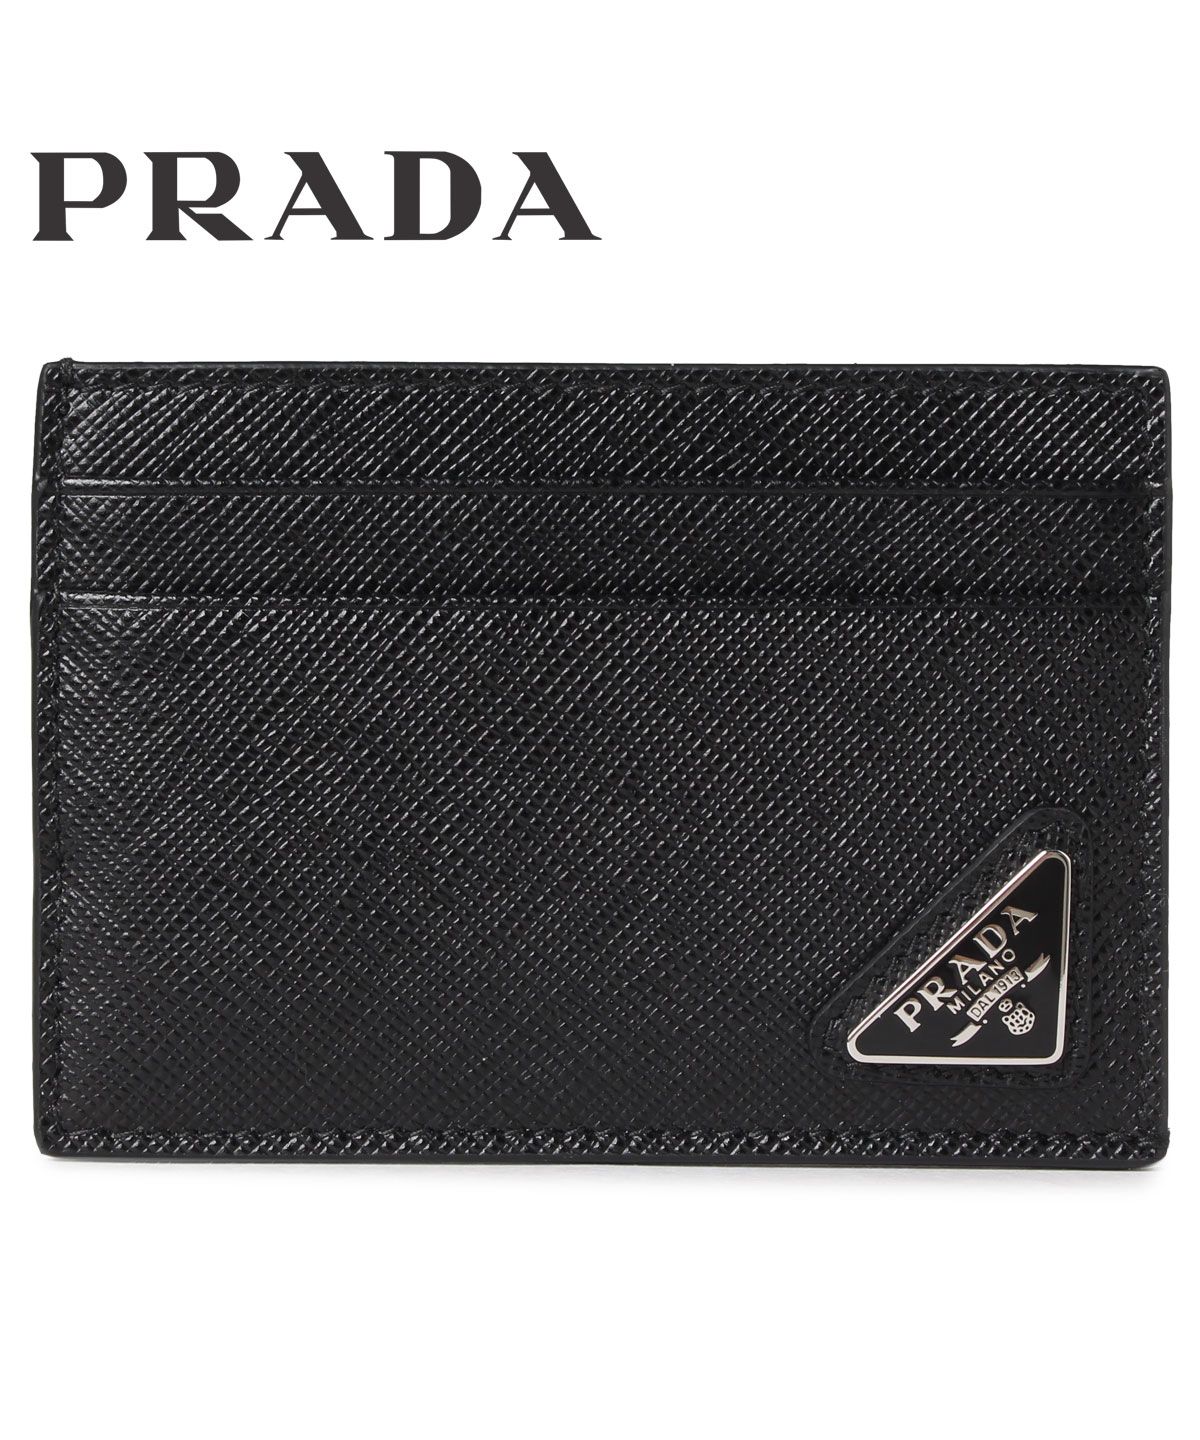 プラダ PRADA パスケース カードケース ID 定期入れ メンズ レディース